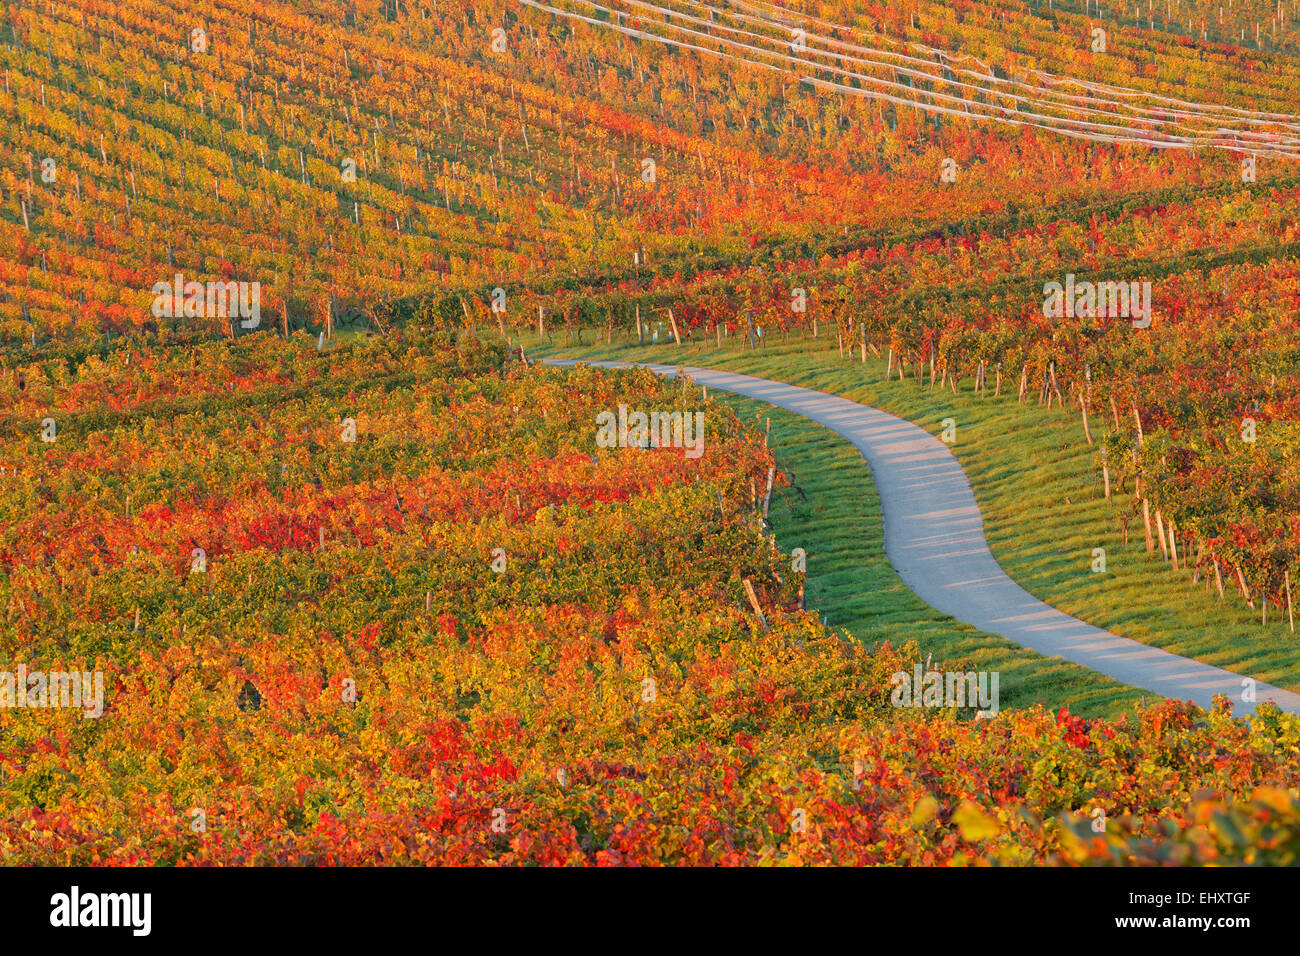 Austria, Burgenland, Oberpullendorf District, Blaufraenkischland, Neckenmarkt, vineyard and road in autumn Stock Photo